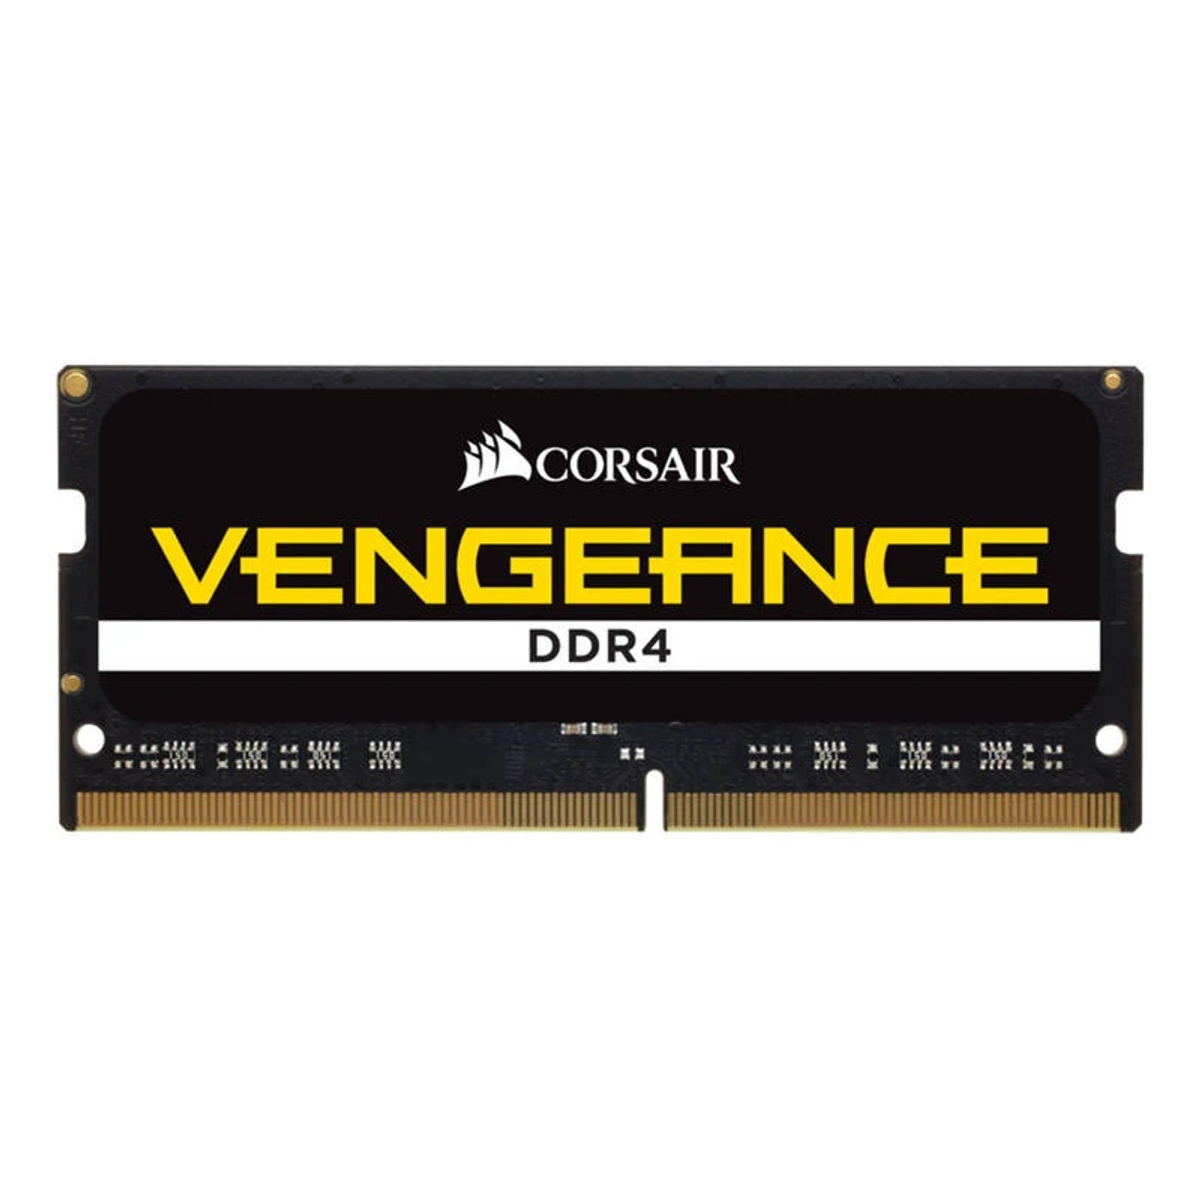 CORSAIR Vengeance DDR4 16 CMSX16GX4M2A2400C16 GB Arbeitsspeicher